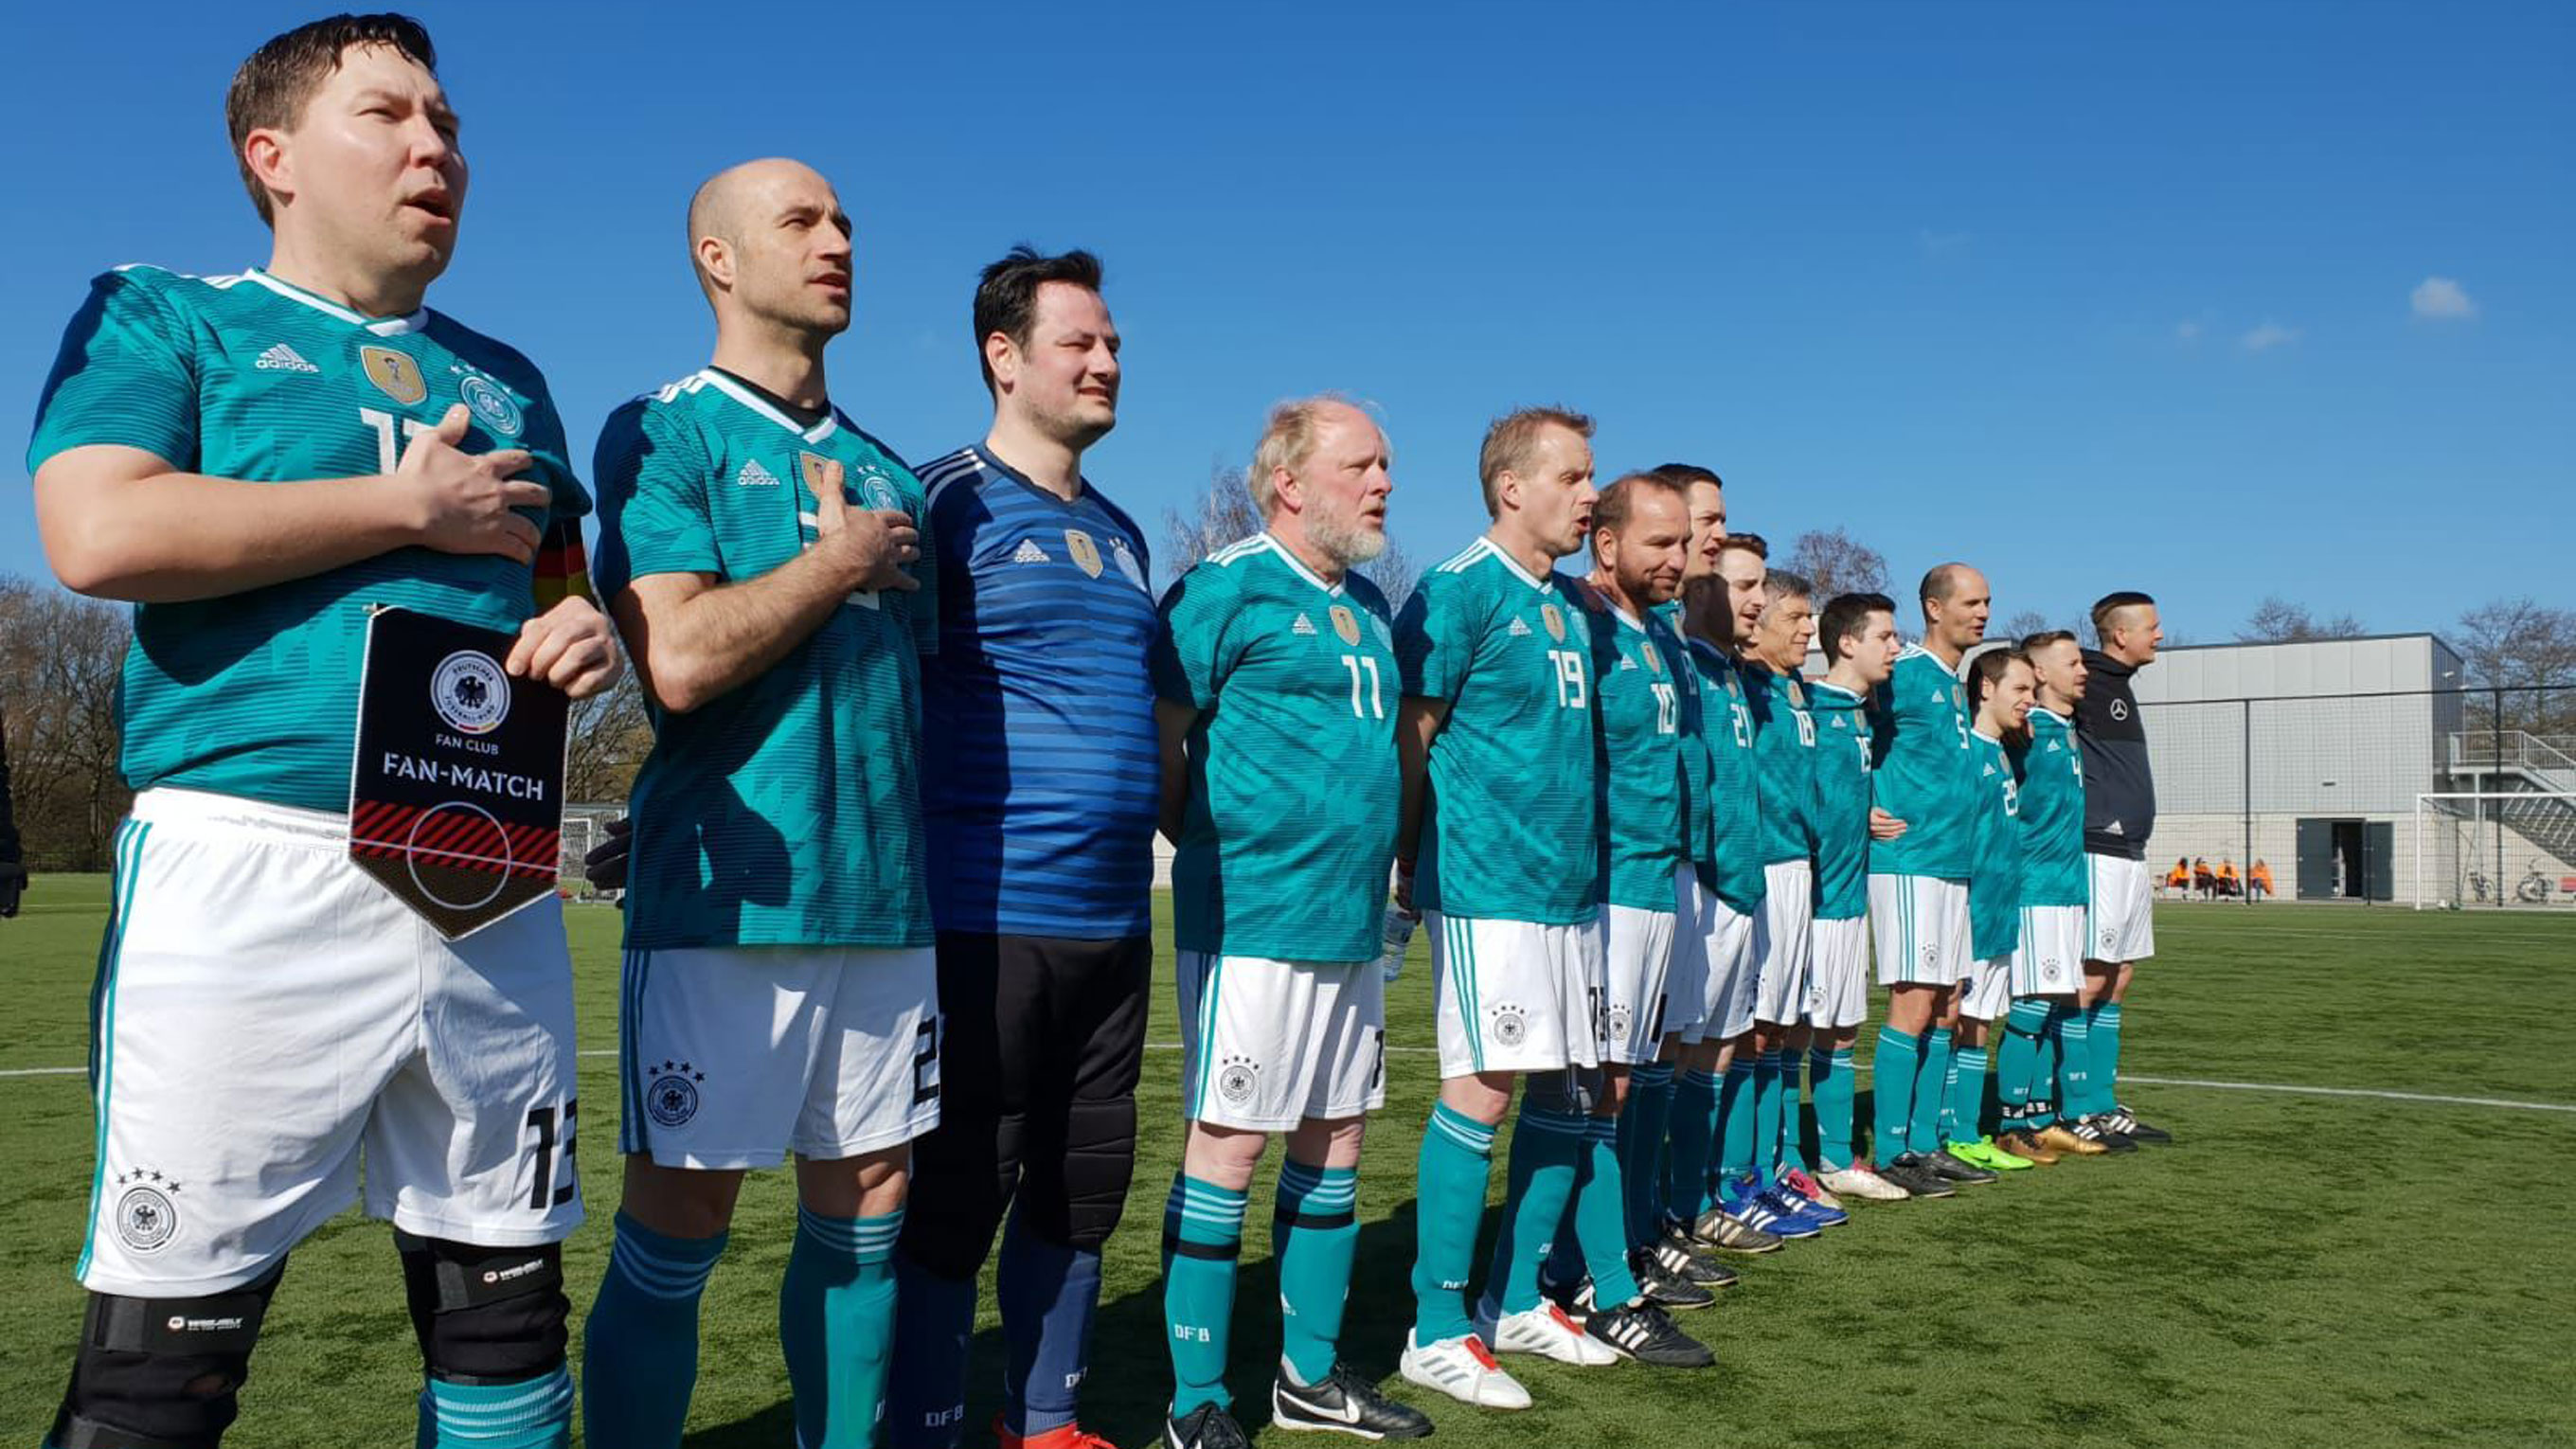 Hymne vor dem Duell mit Oranjes Supporters: Die Fan-Nationalmannschaft gewinnt  © DFB